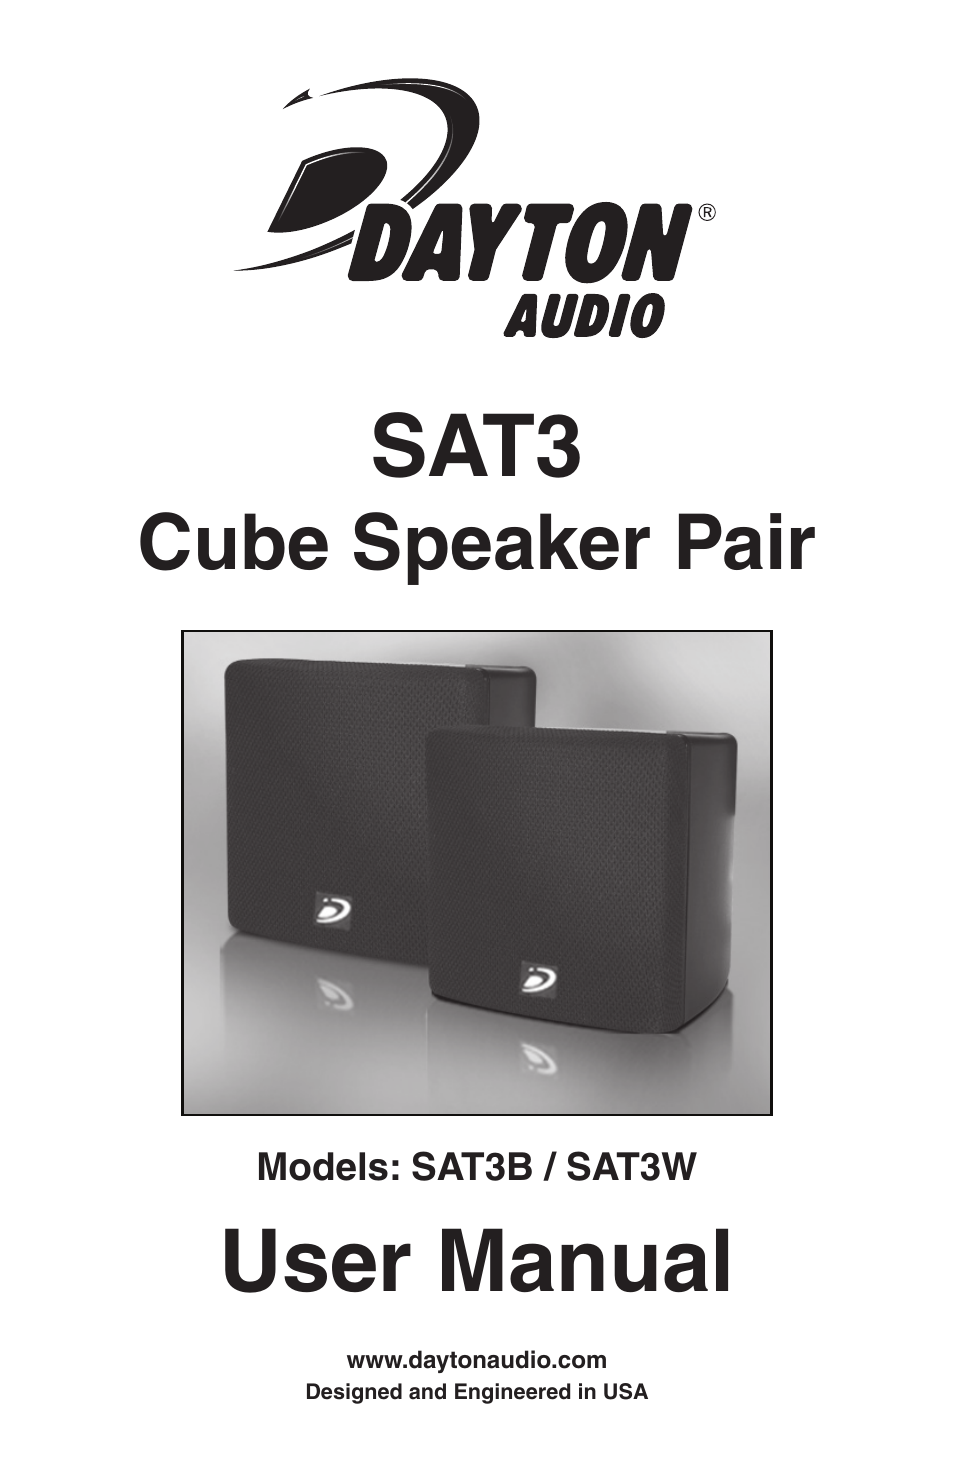 SAT3W 3.5" Cube Speaker Pair White